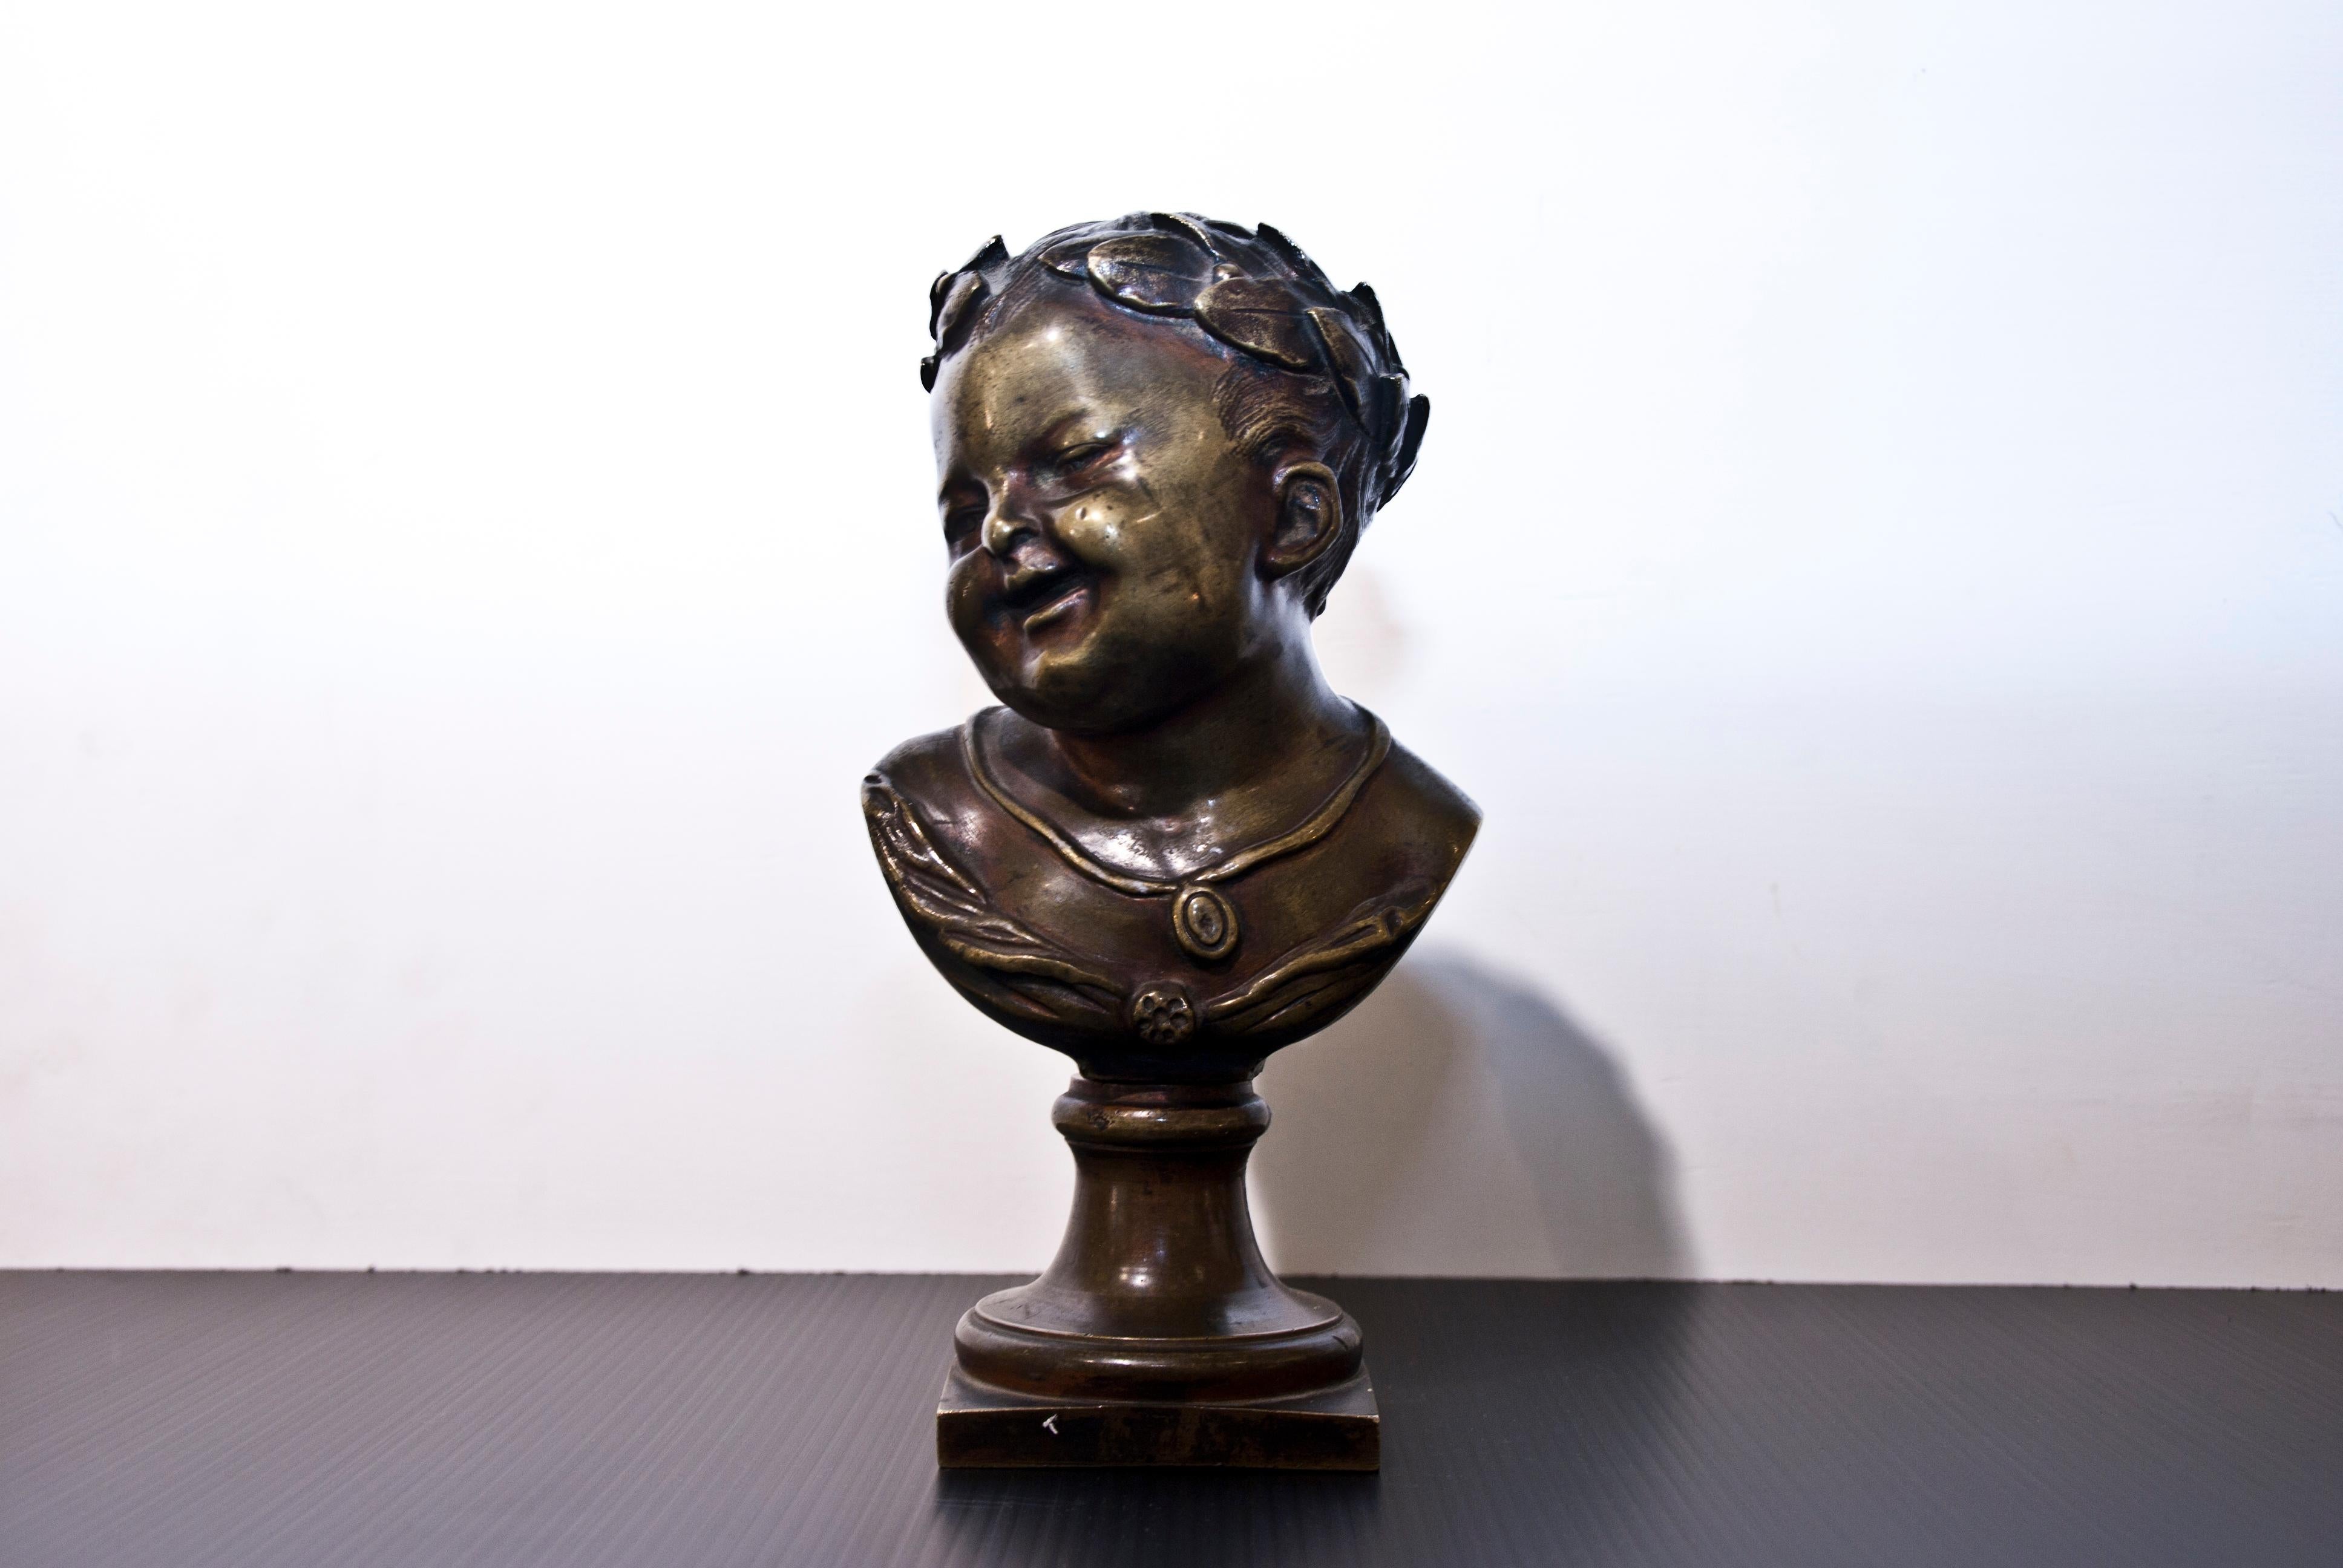 Buste en bronze du 19e siècle représentant un jeune empereur. 

Cet objet est expédié d'Italie. En vertu de la législation en vigueur, tout objet se trouvant en Italie et créé il y a plus de 70 ans par un artiste décédé doit faire l'objet d'une